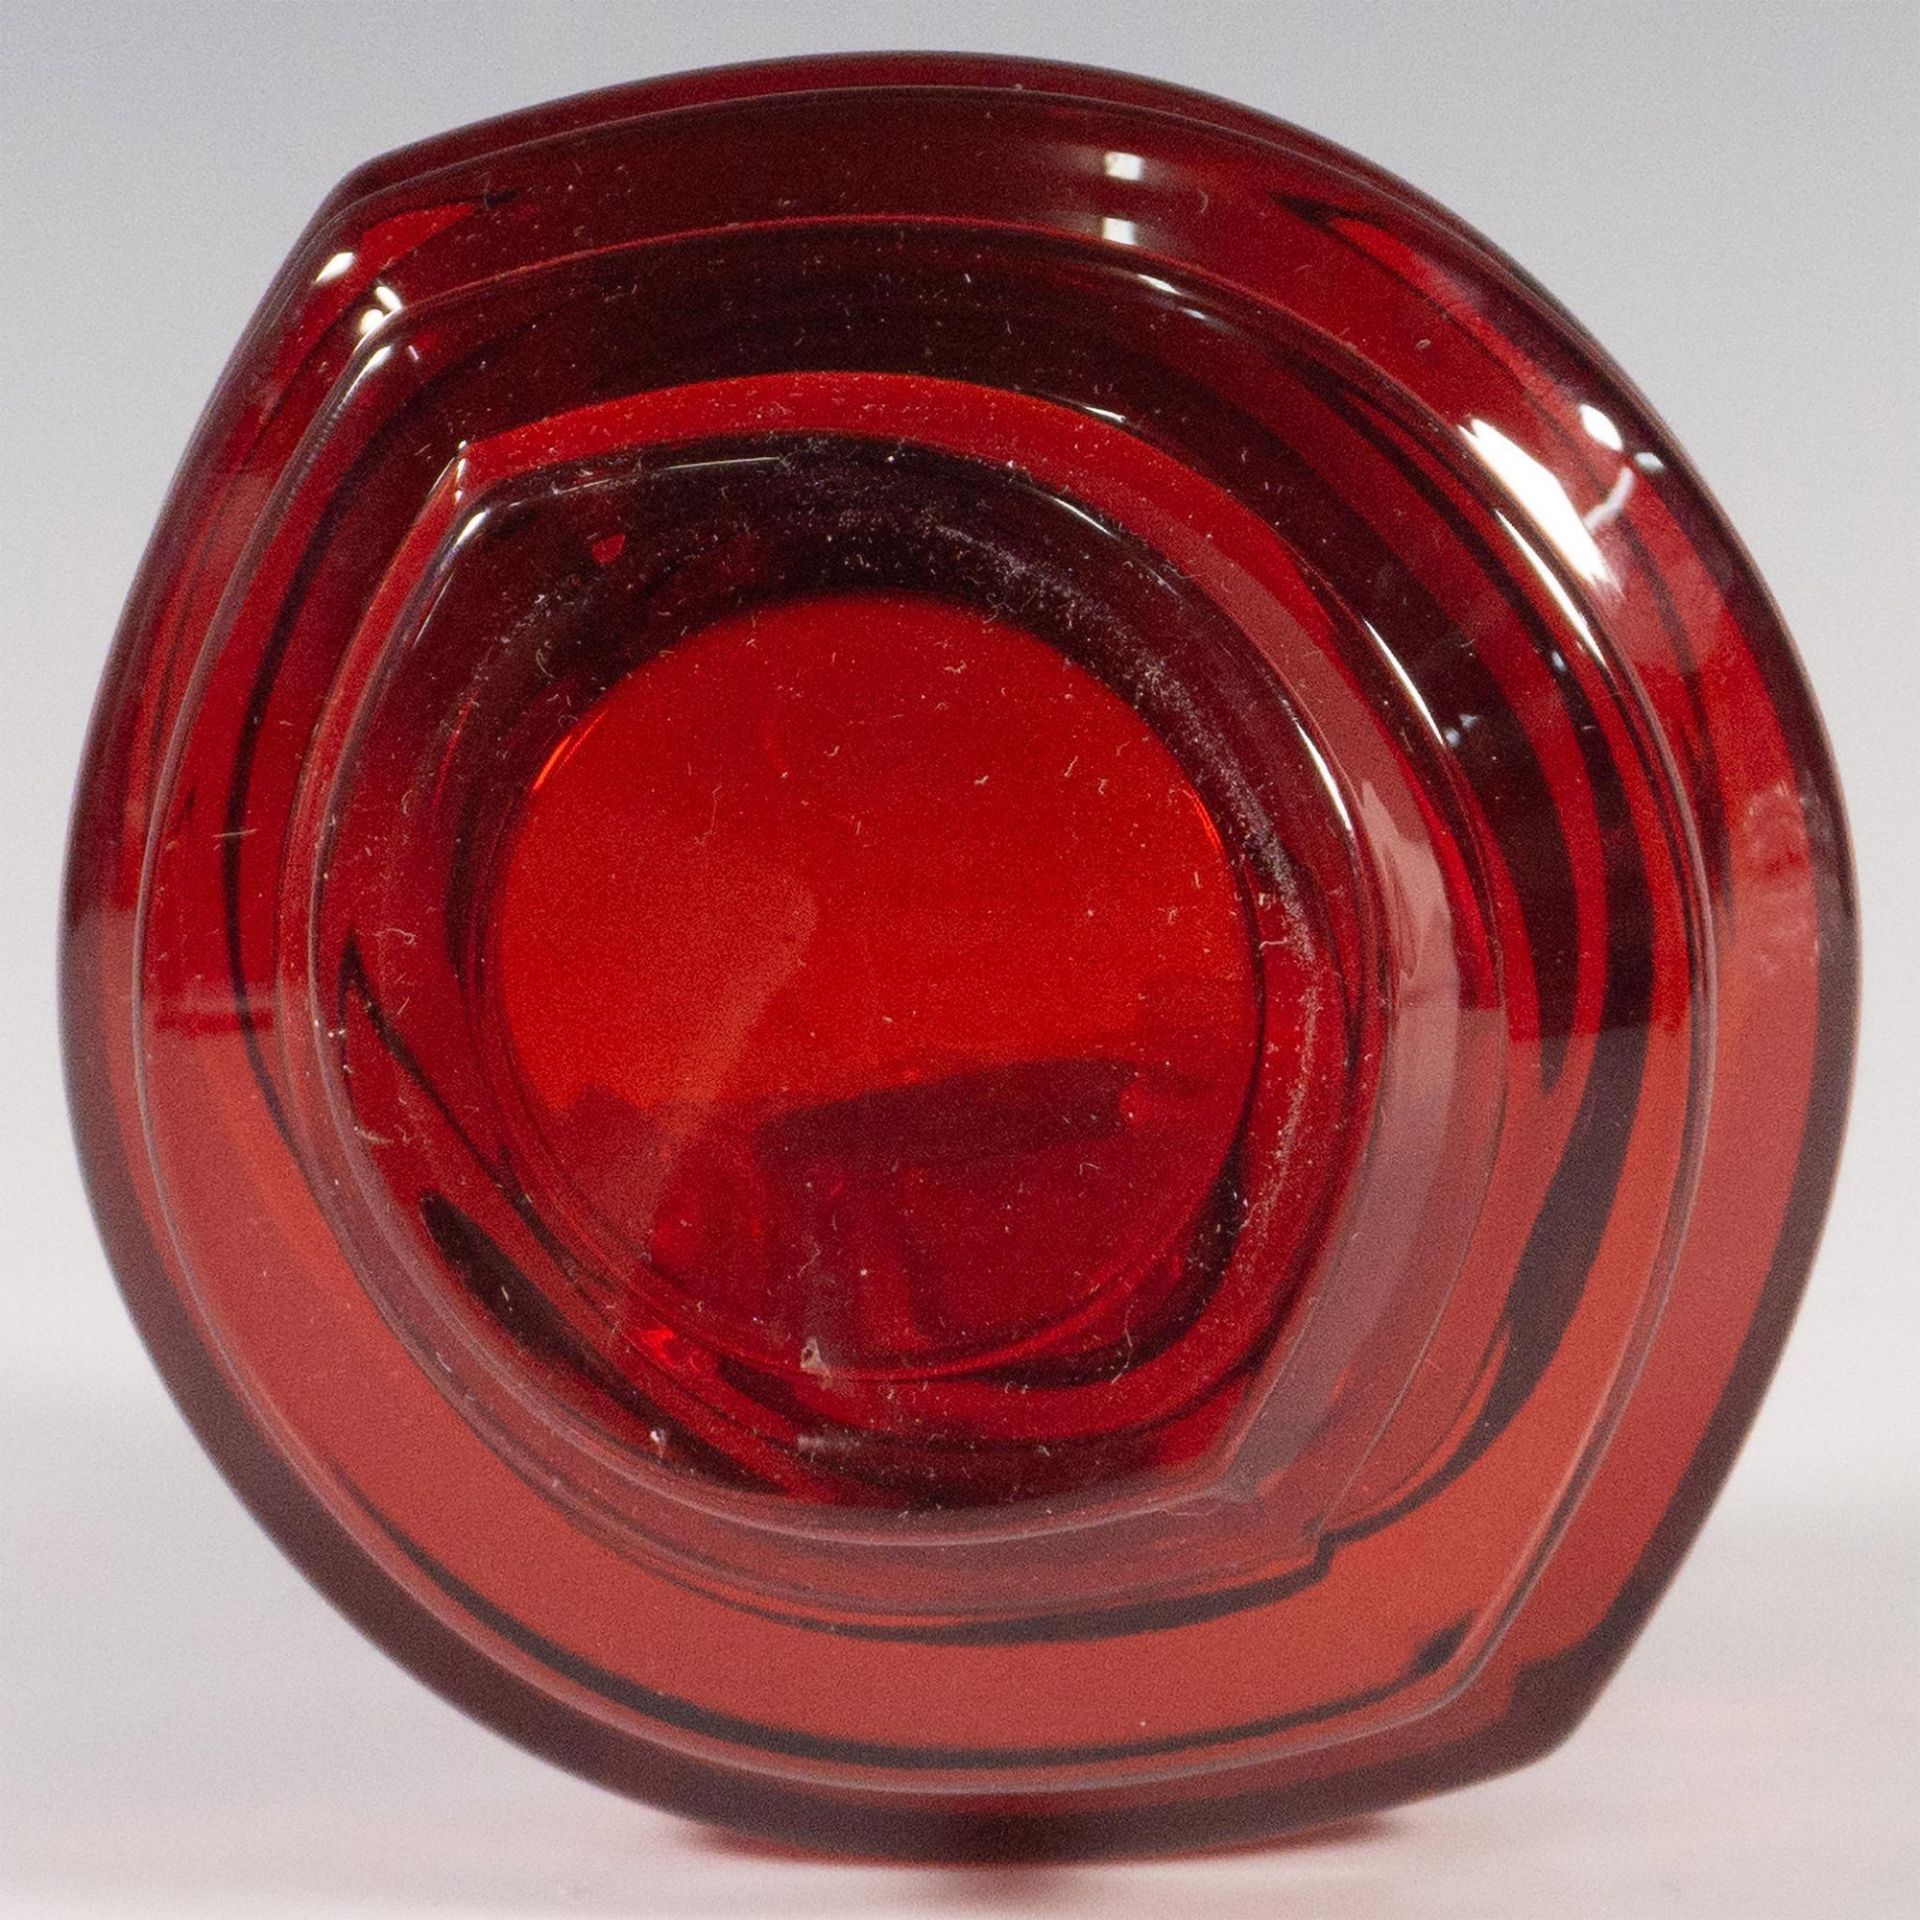 Orrefors Crystal Candle Holder, Eko Red Votive - Image 3 of 3